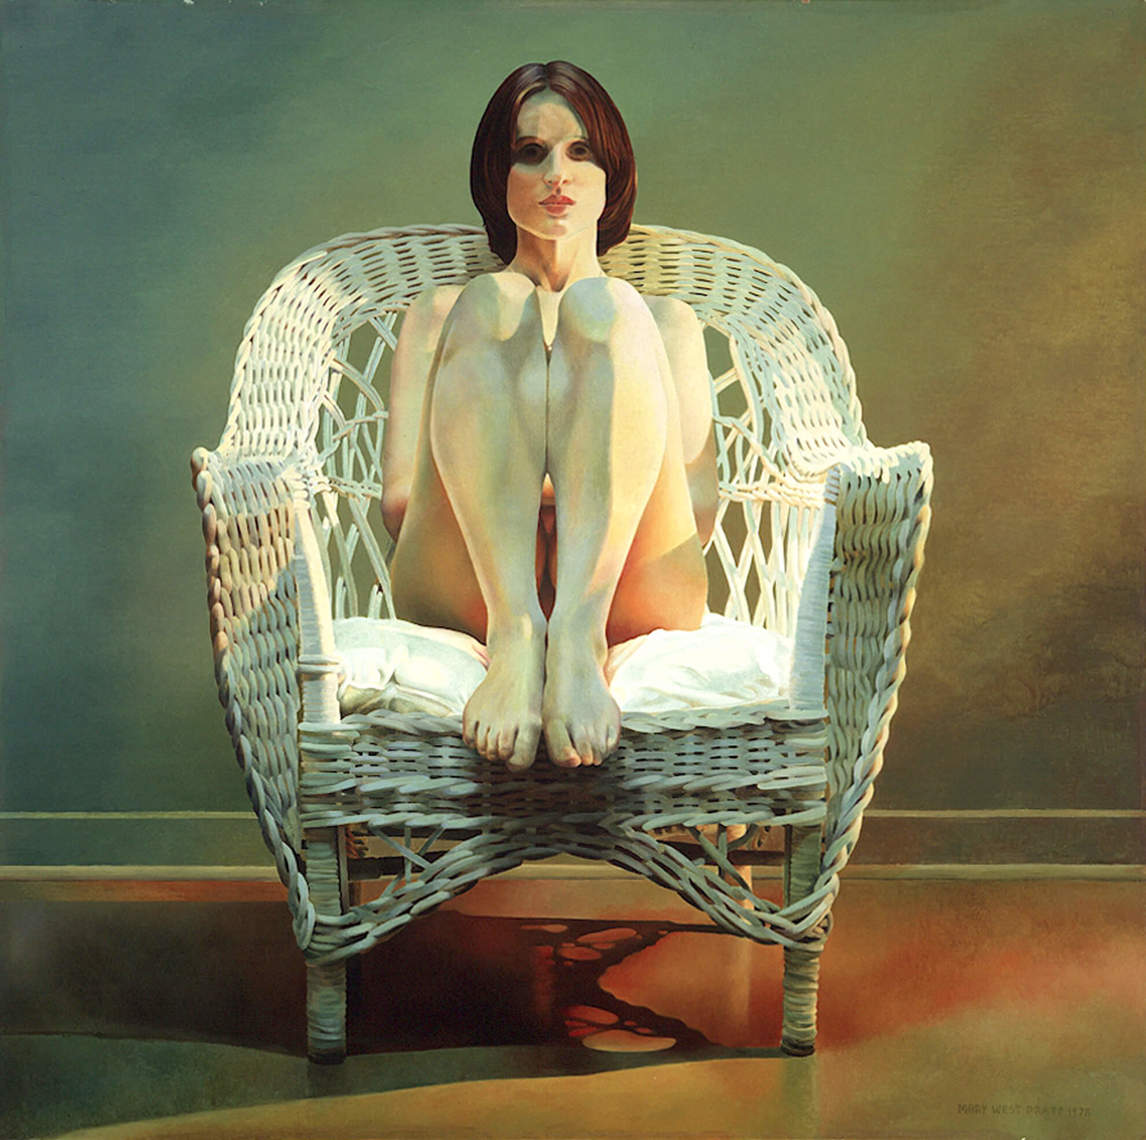 Mary Pratt, Girl in Wicker Chair (Fille dans une chaise en osier), 197